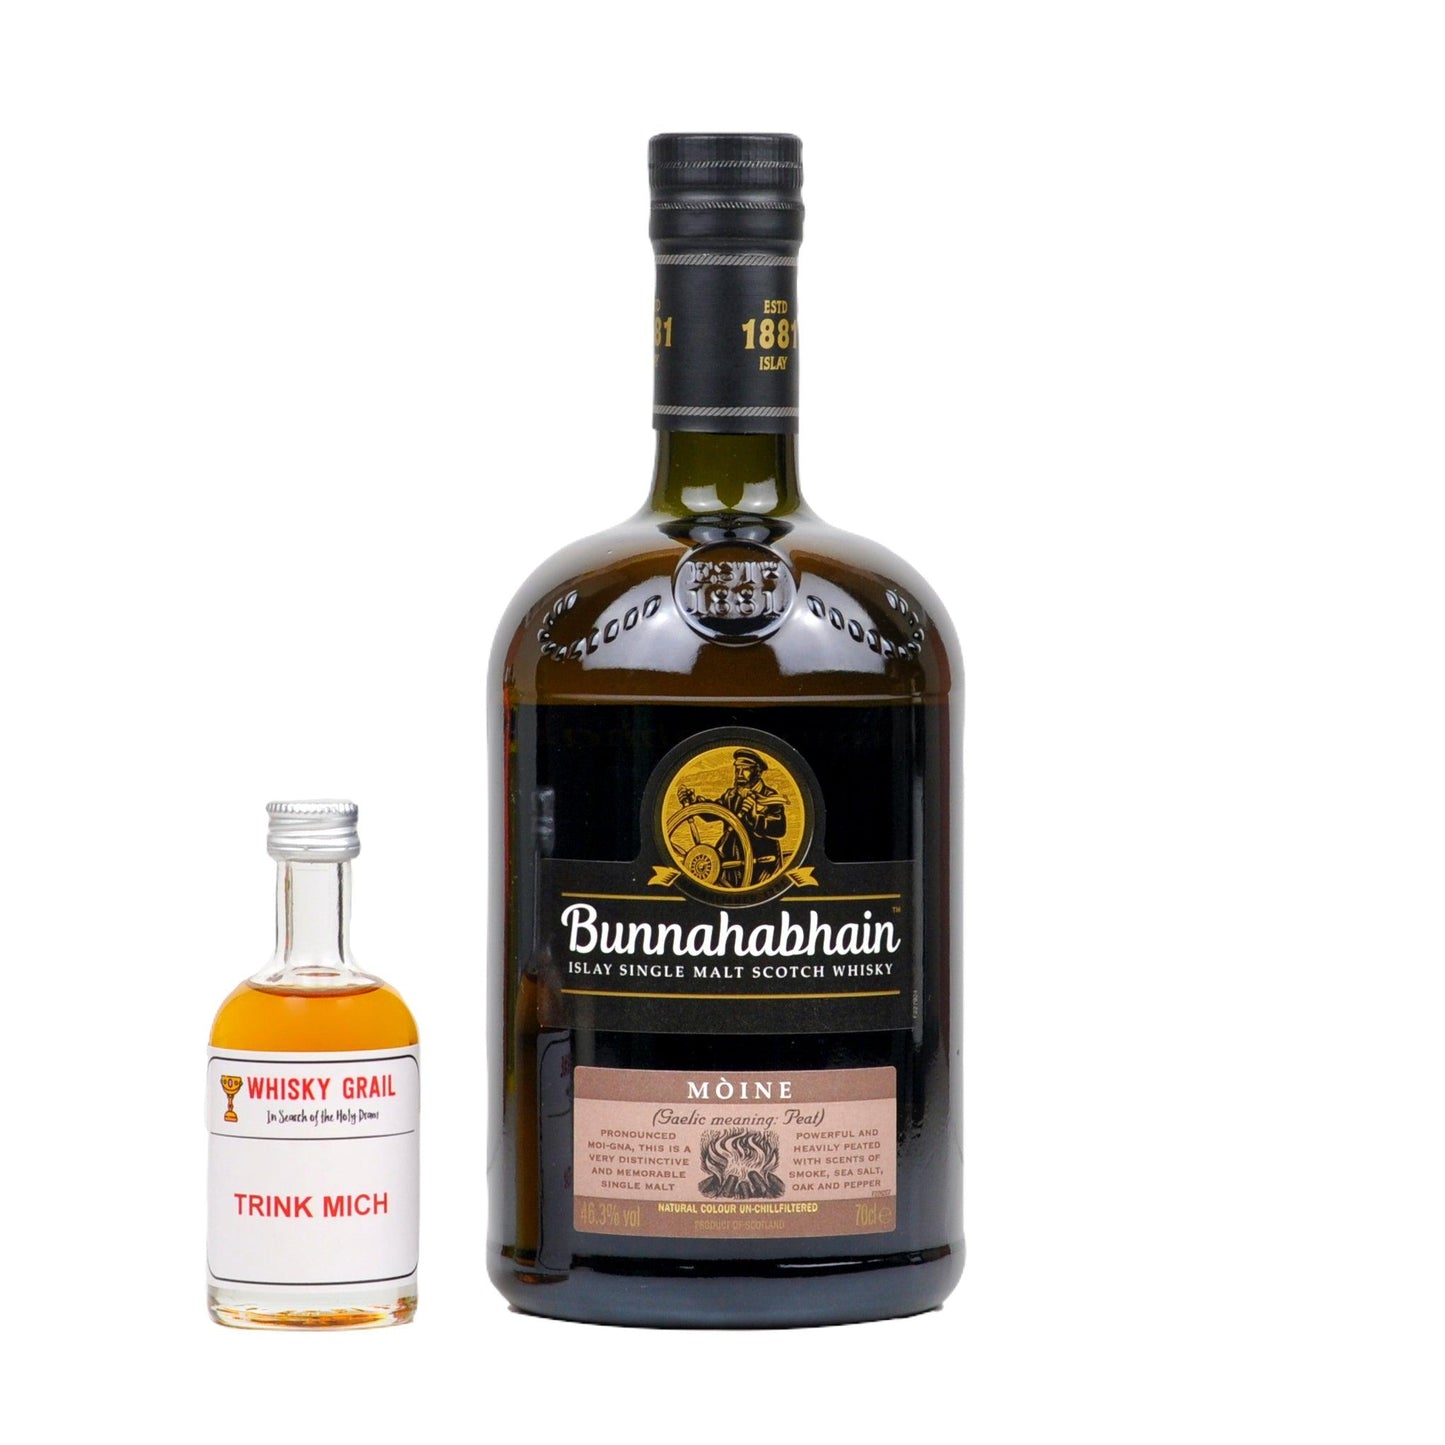 Bunnahabhain Moine - Whisky Grail